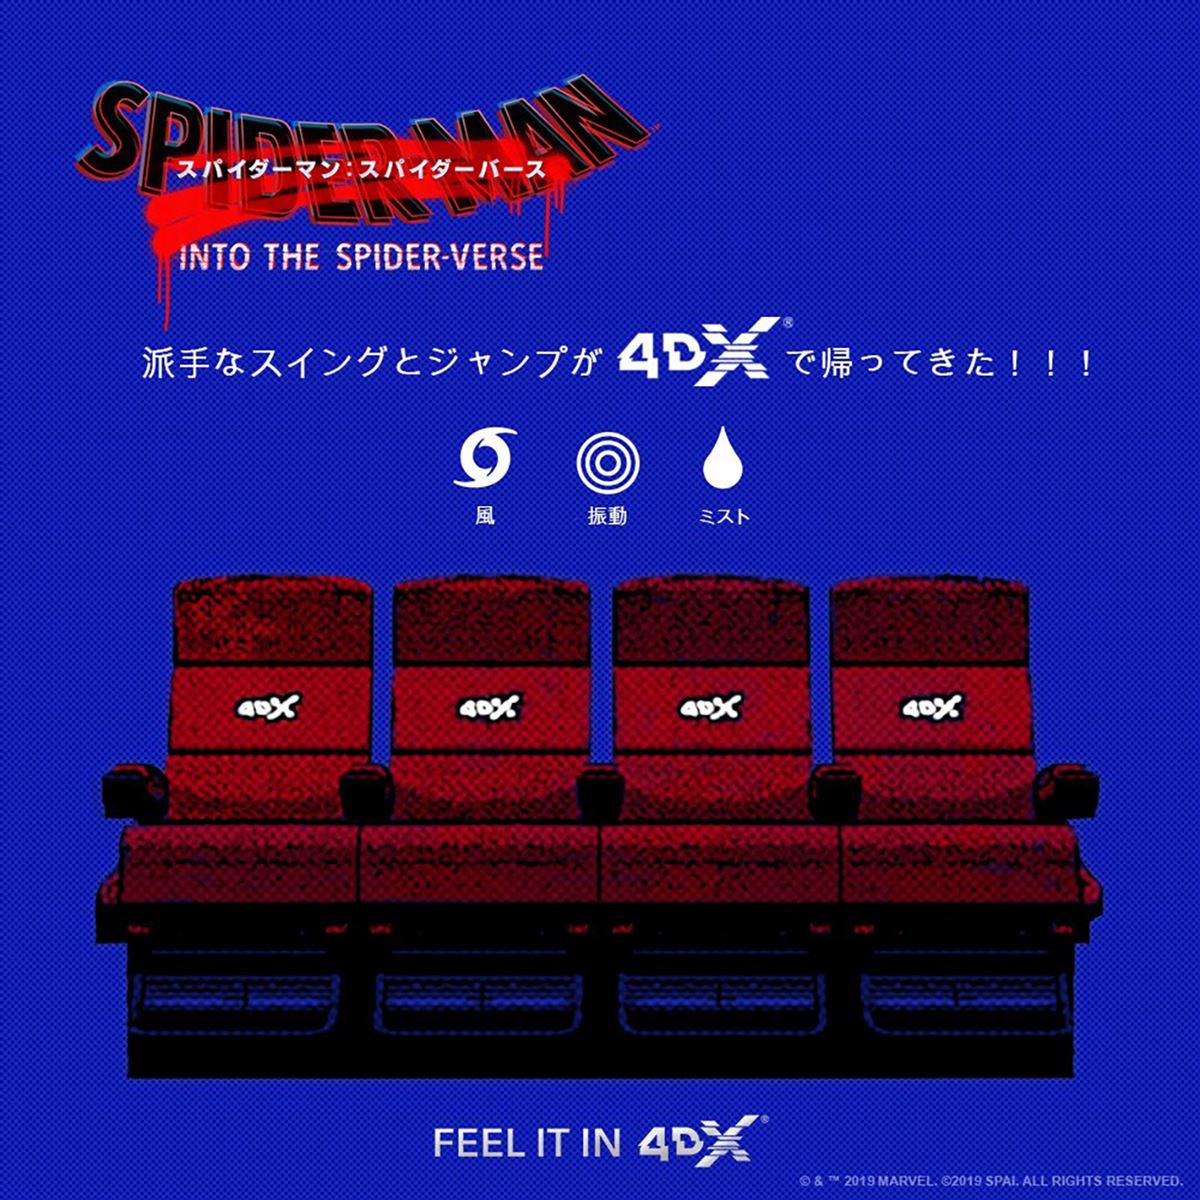 『スパイダーマン：スパイダーバース』4DXオリジナル・ビジュアル